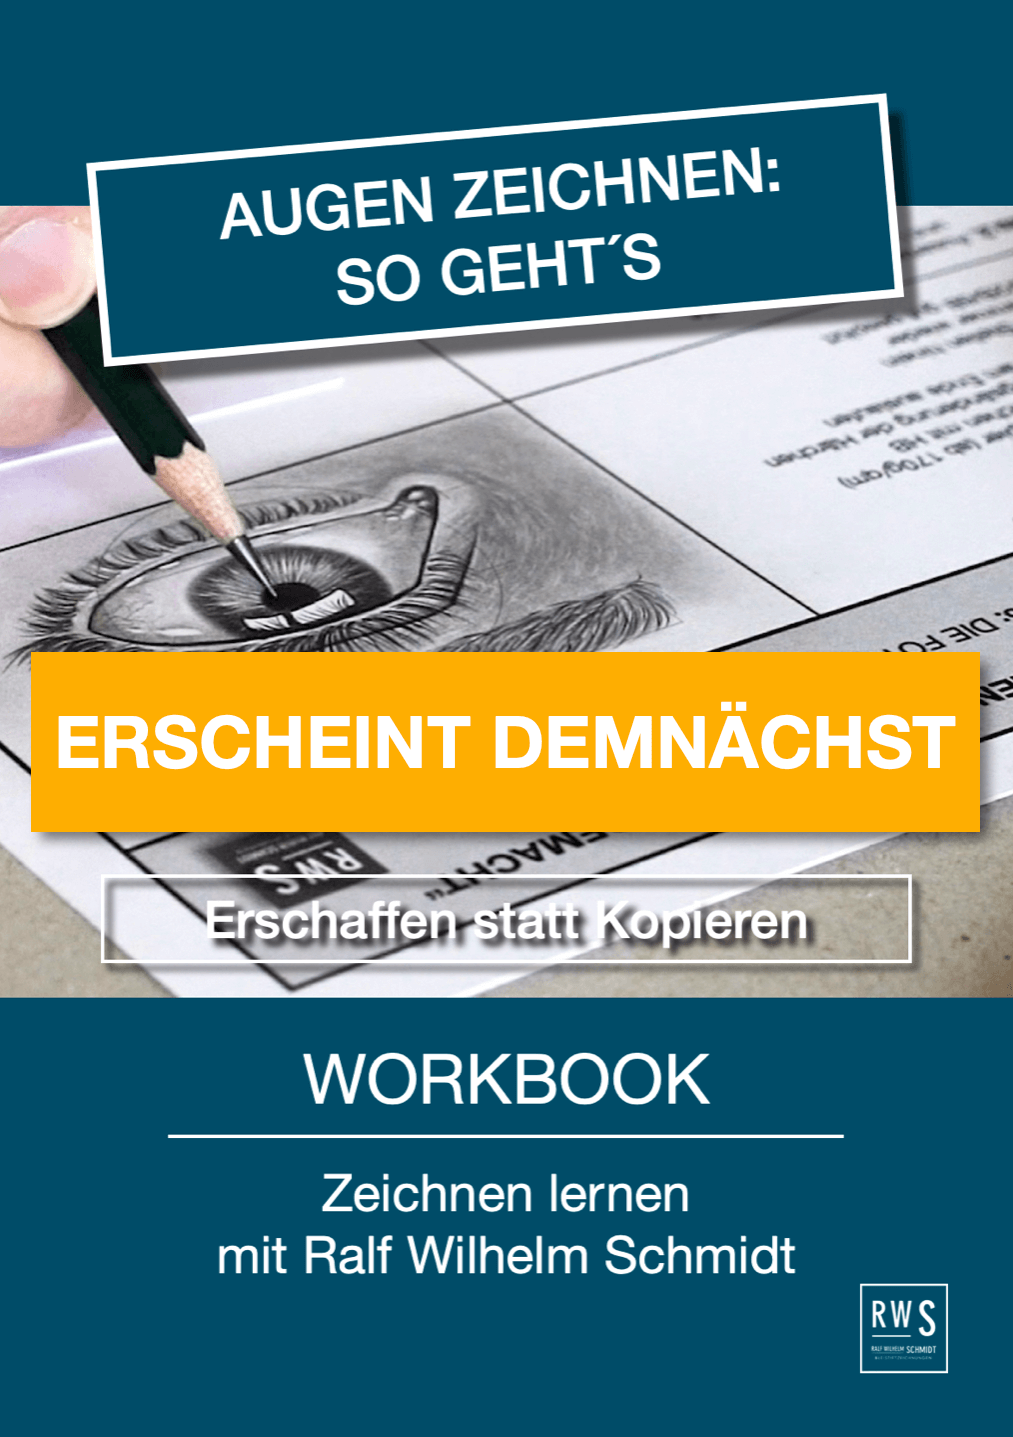 Augen zeichnen Workbook von Ralf Wilhelm Schmidt